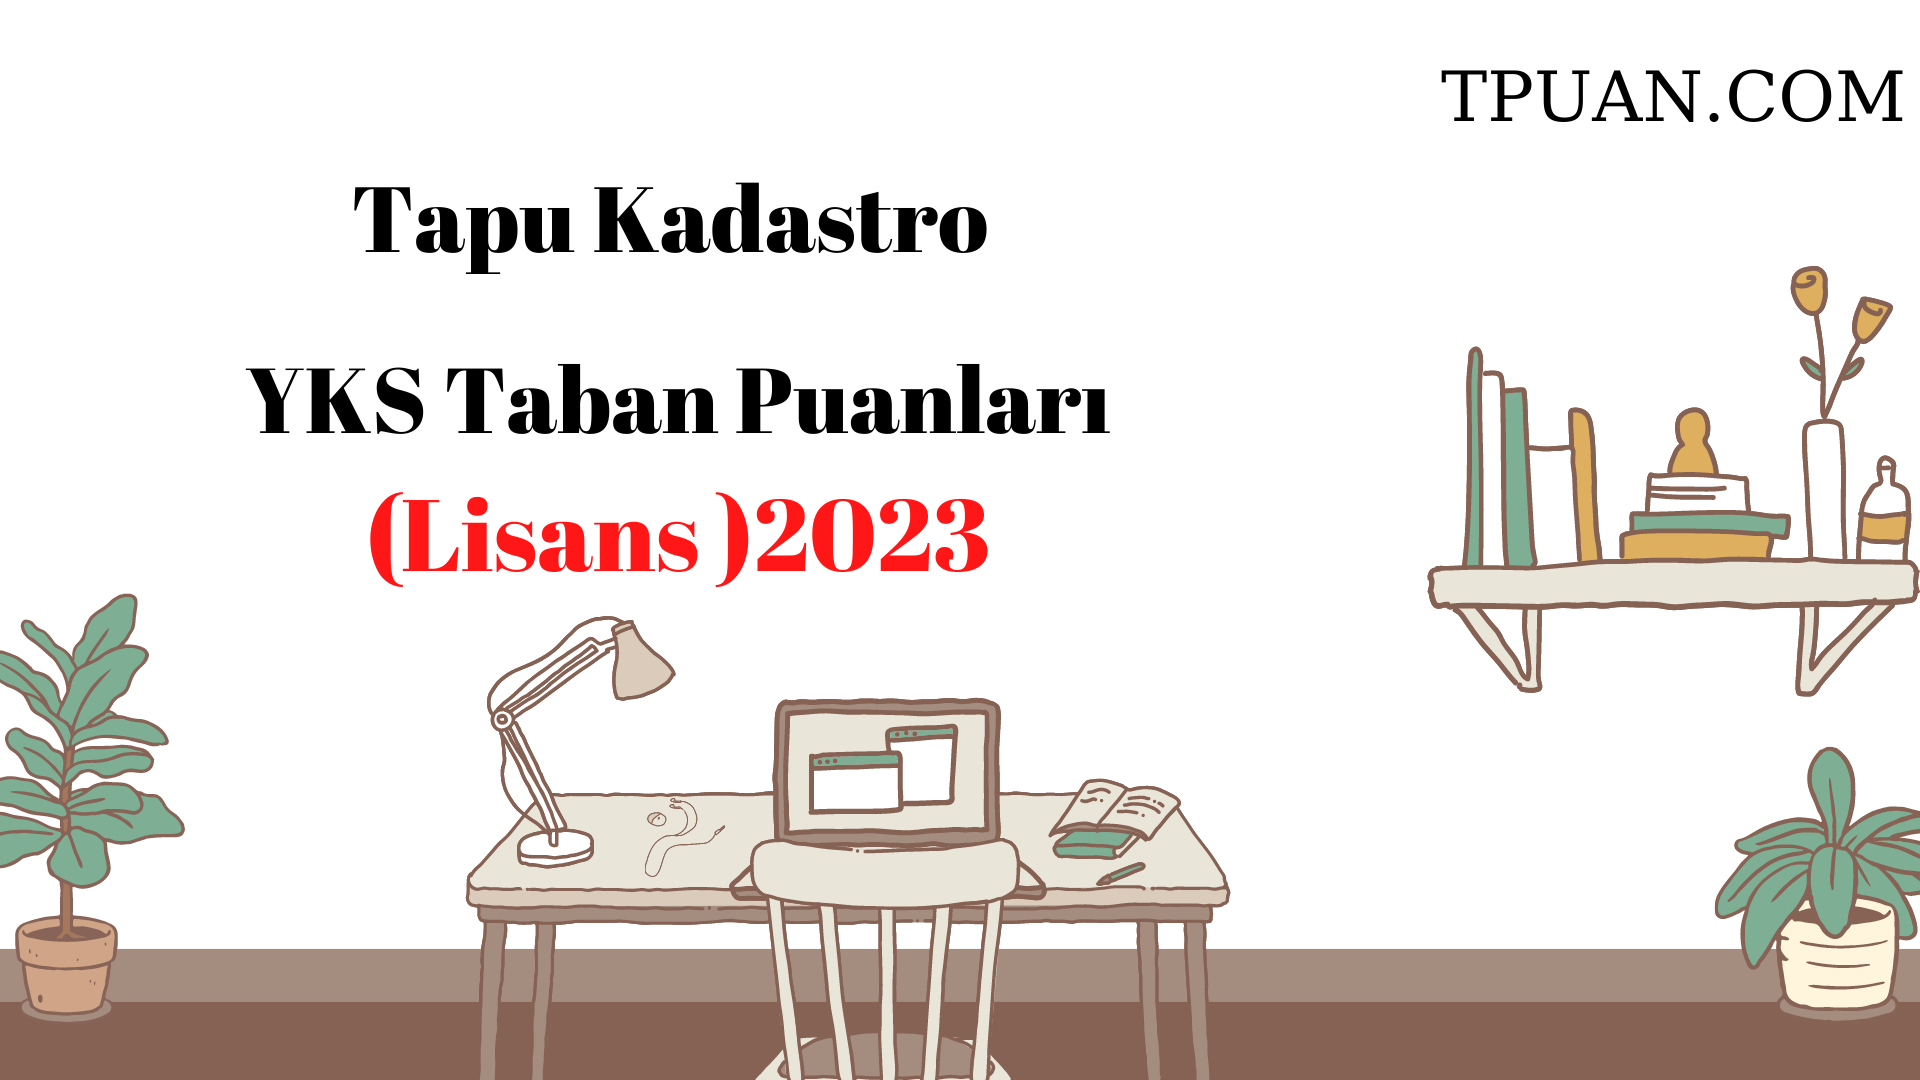  Tapu Kadastro Bölümü YKS Taban Puanları (4 Yıllık) 2023